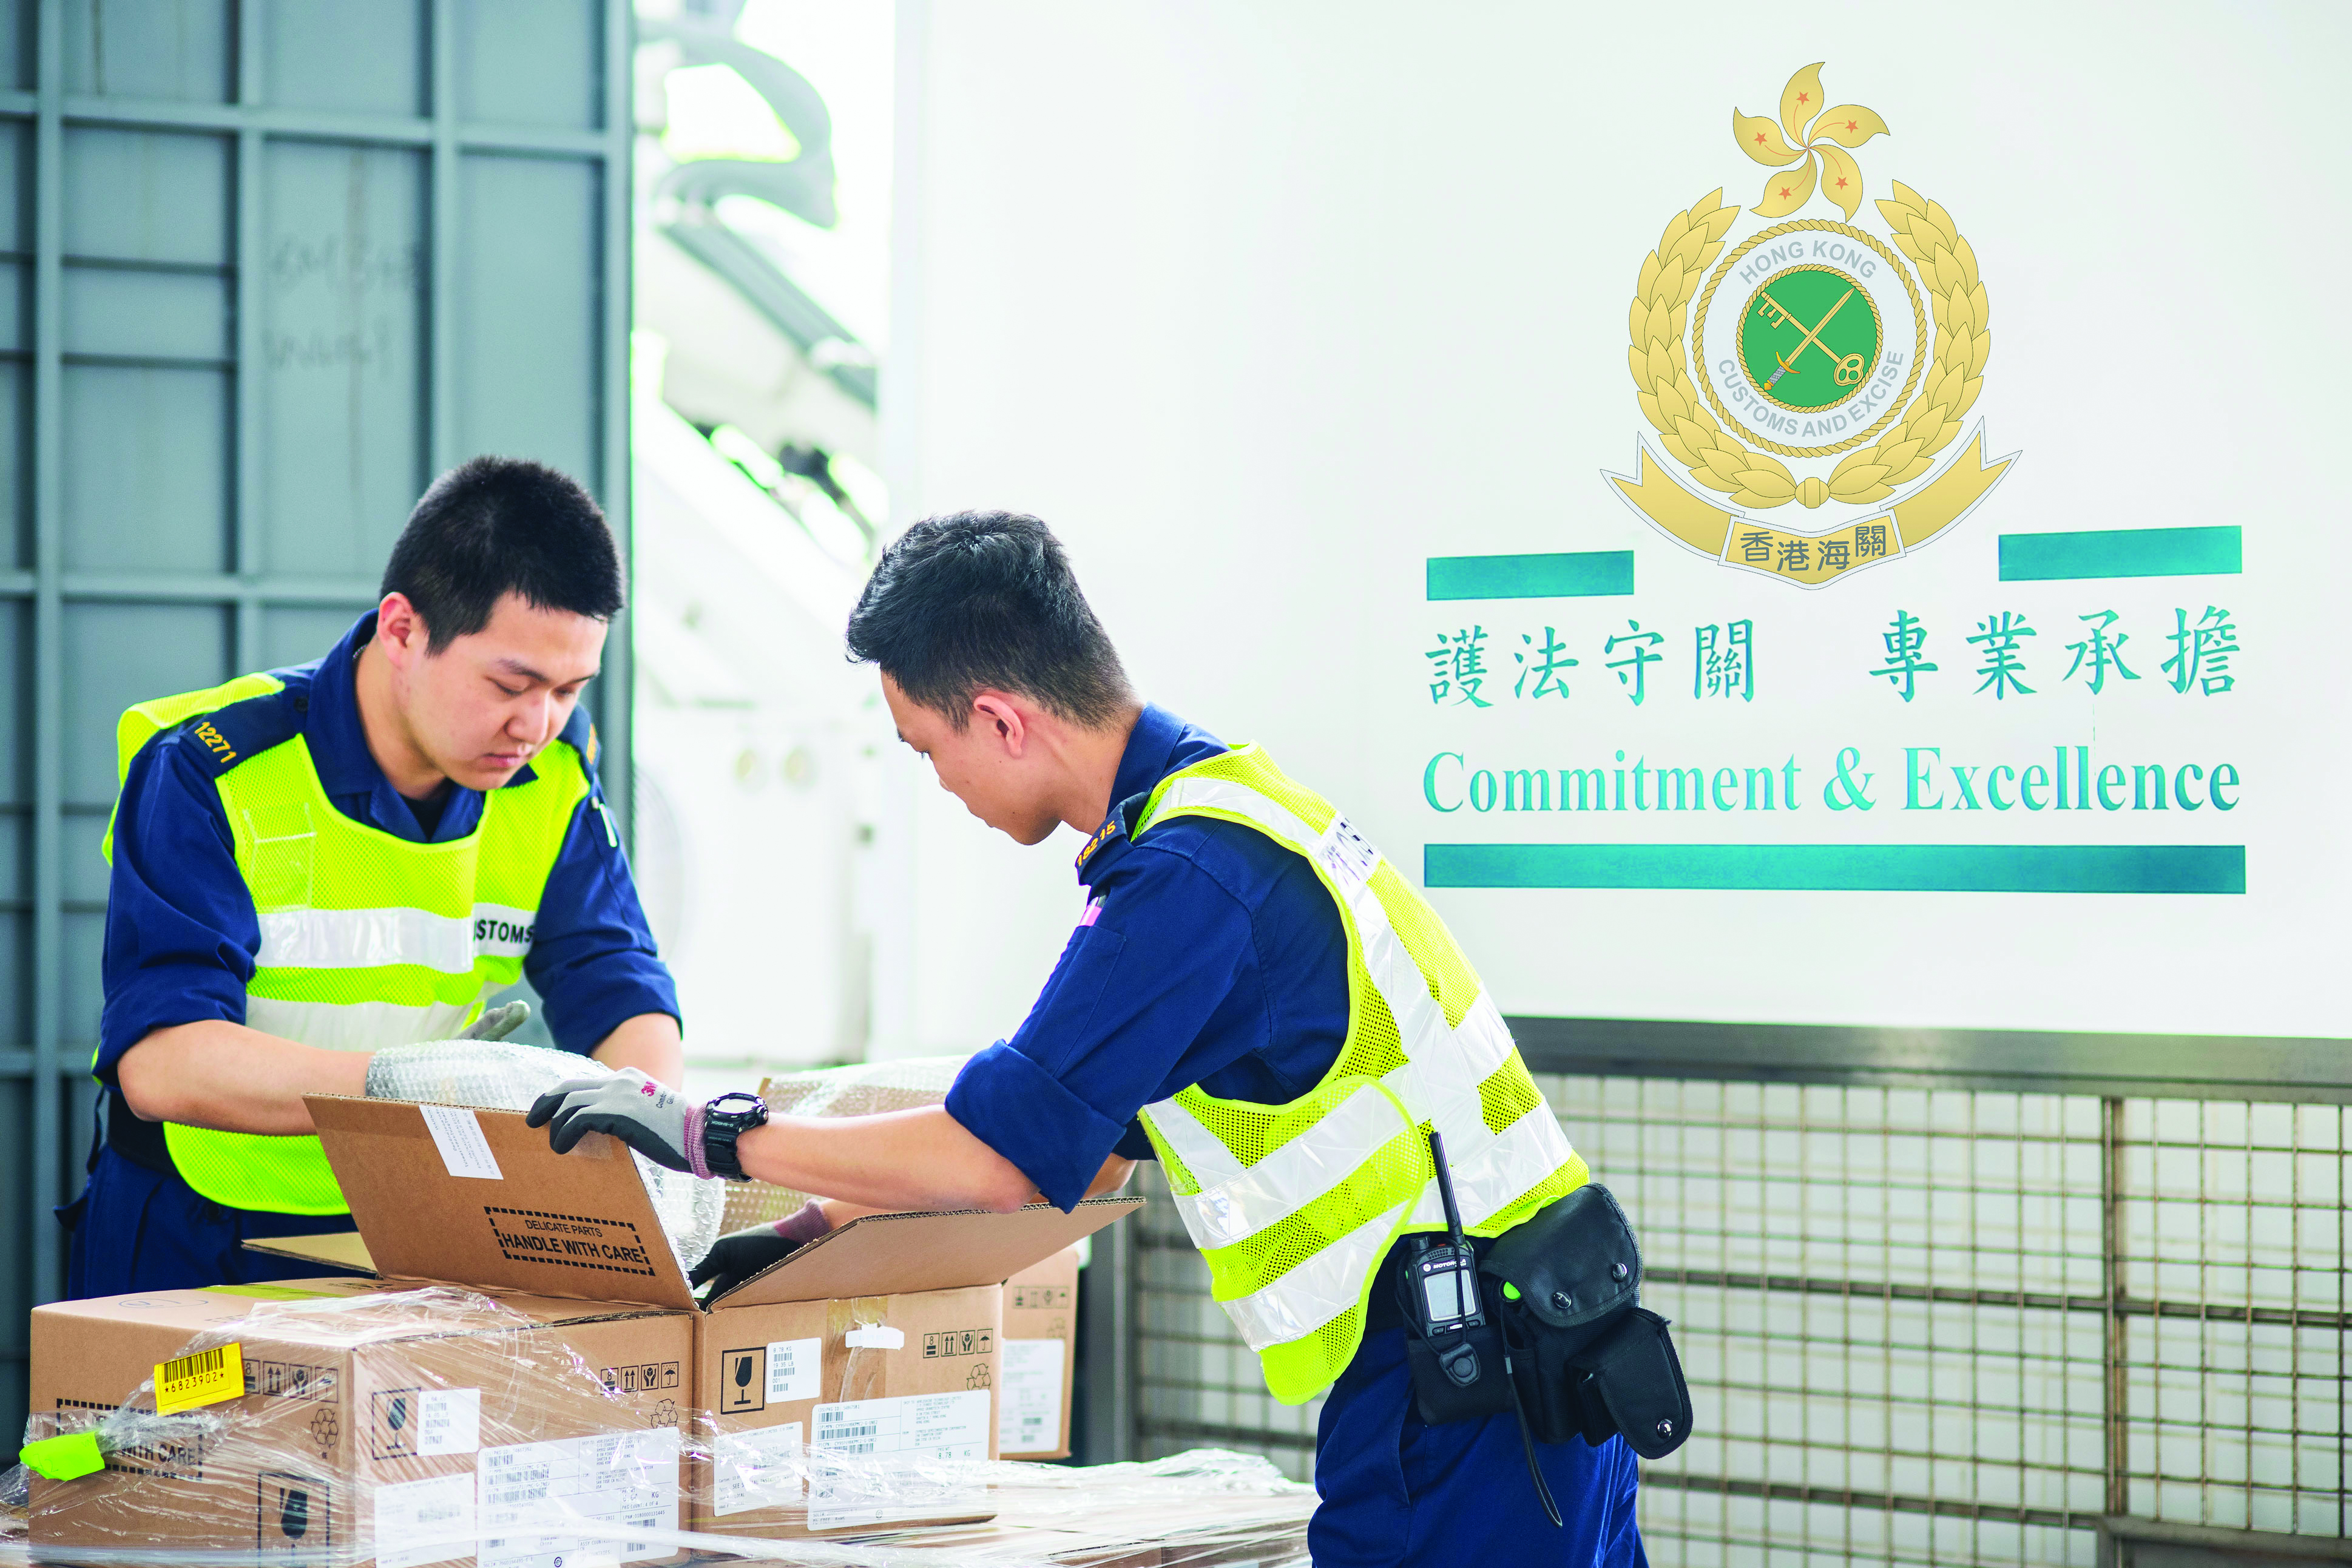 香港海關的工作範疇與總體國家安全觀息息相關，專責打擊及堵截各類型走私活動包括槍枝彈藥、軍火武器、戰略物品等。